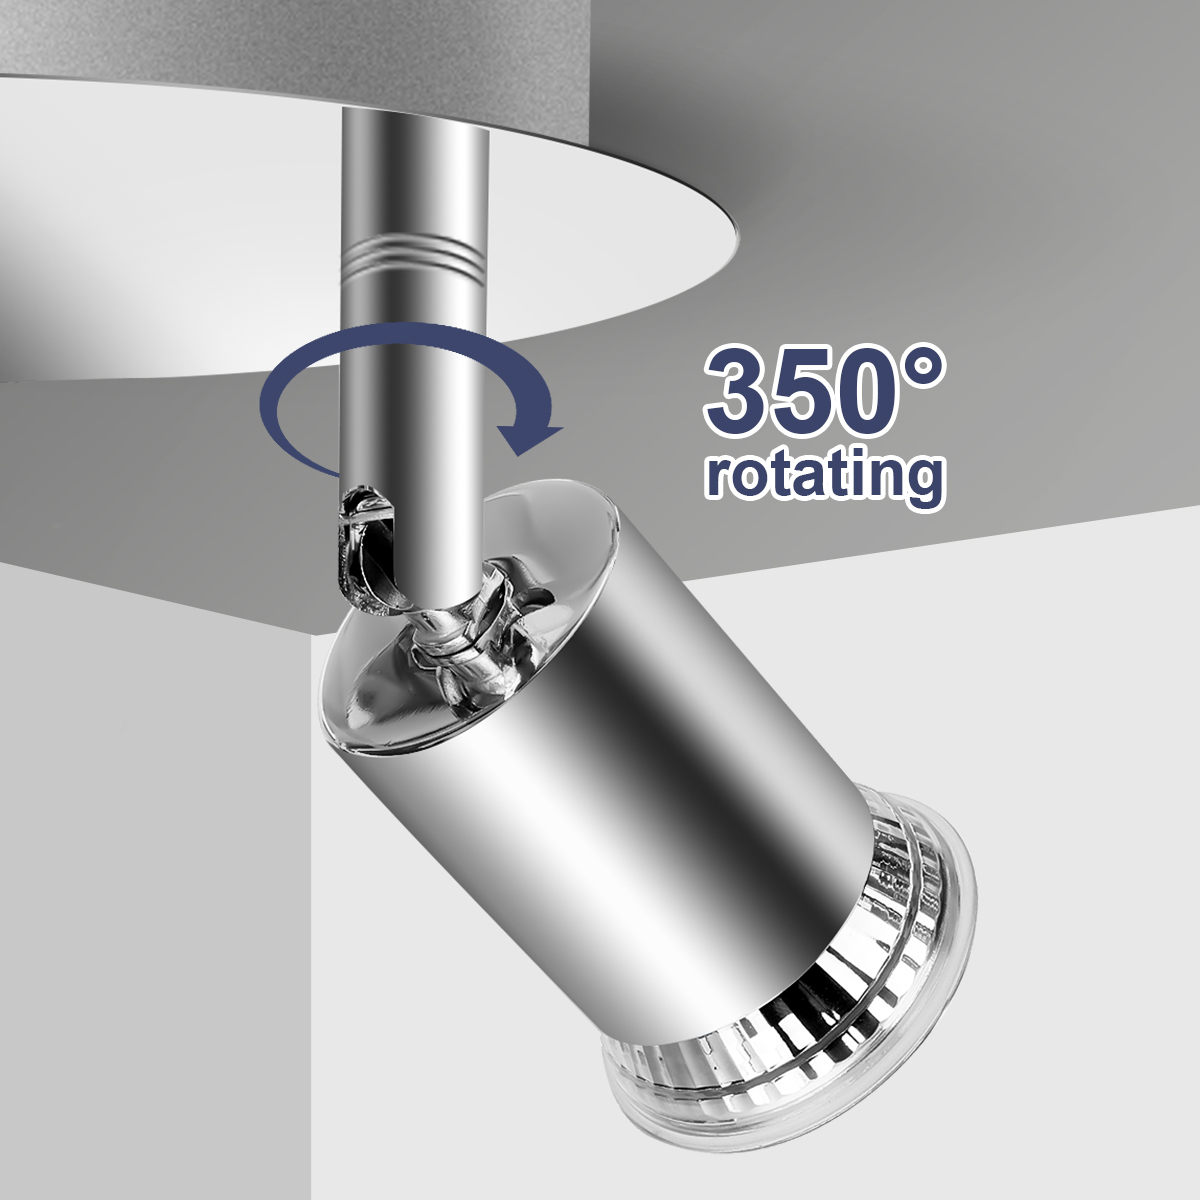 Elfeland-100-220V-4-Way-GU10-LED-Rotatable-Ceiling-Light-Lamp-Bulb-Spotlight-Fitting-Home-Lighting-1888430-3